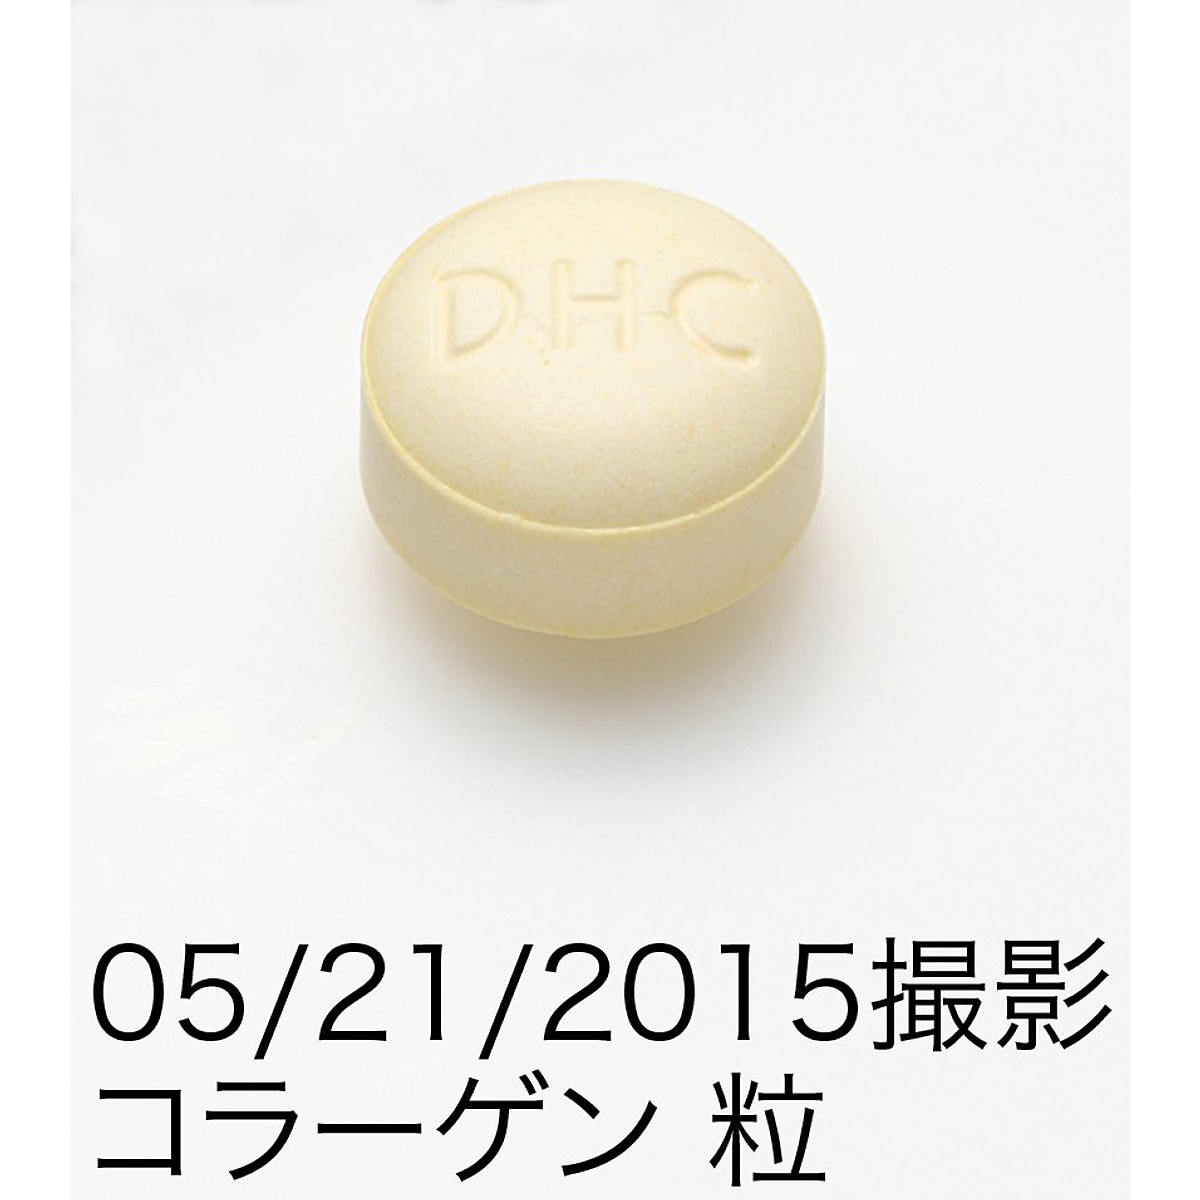 Combo Viên Uống Làm Đẹp Da DHC Collagen - Vitamin C Nhật Bản 30 Ngày